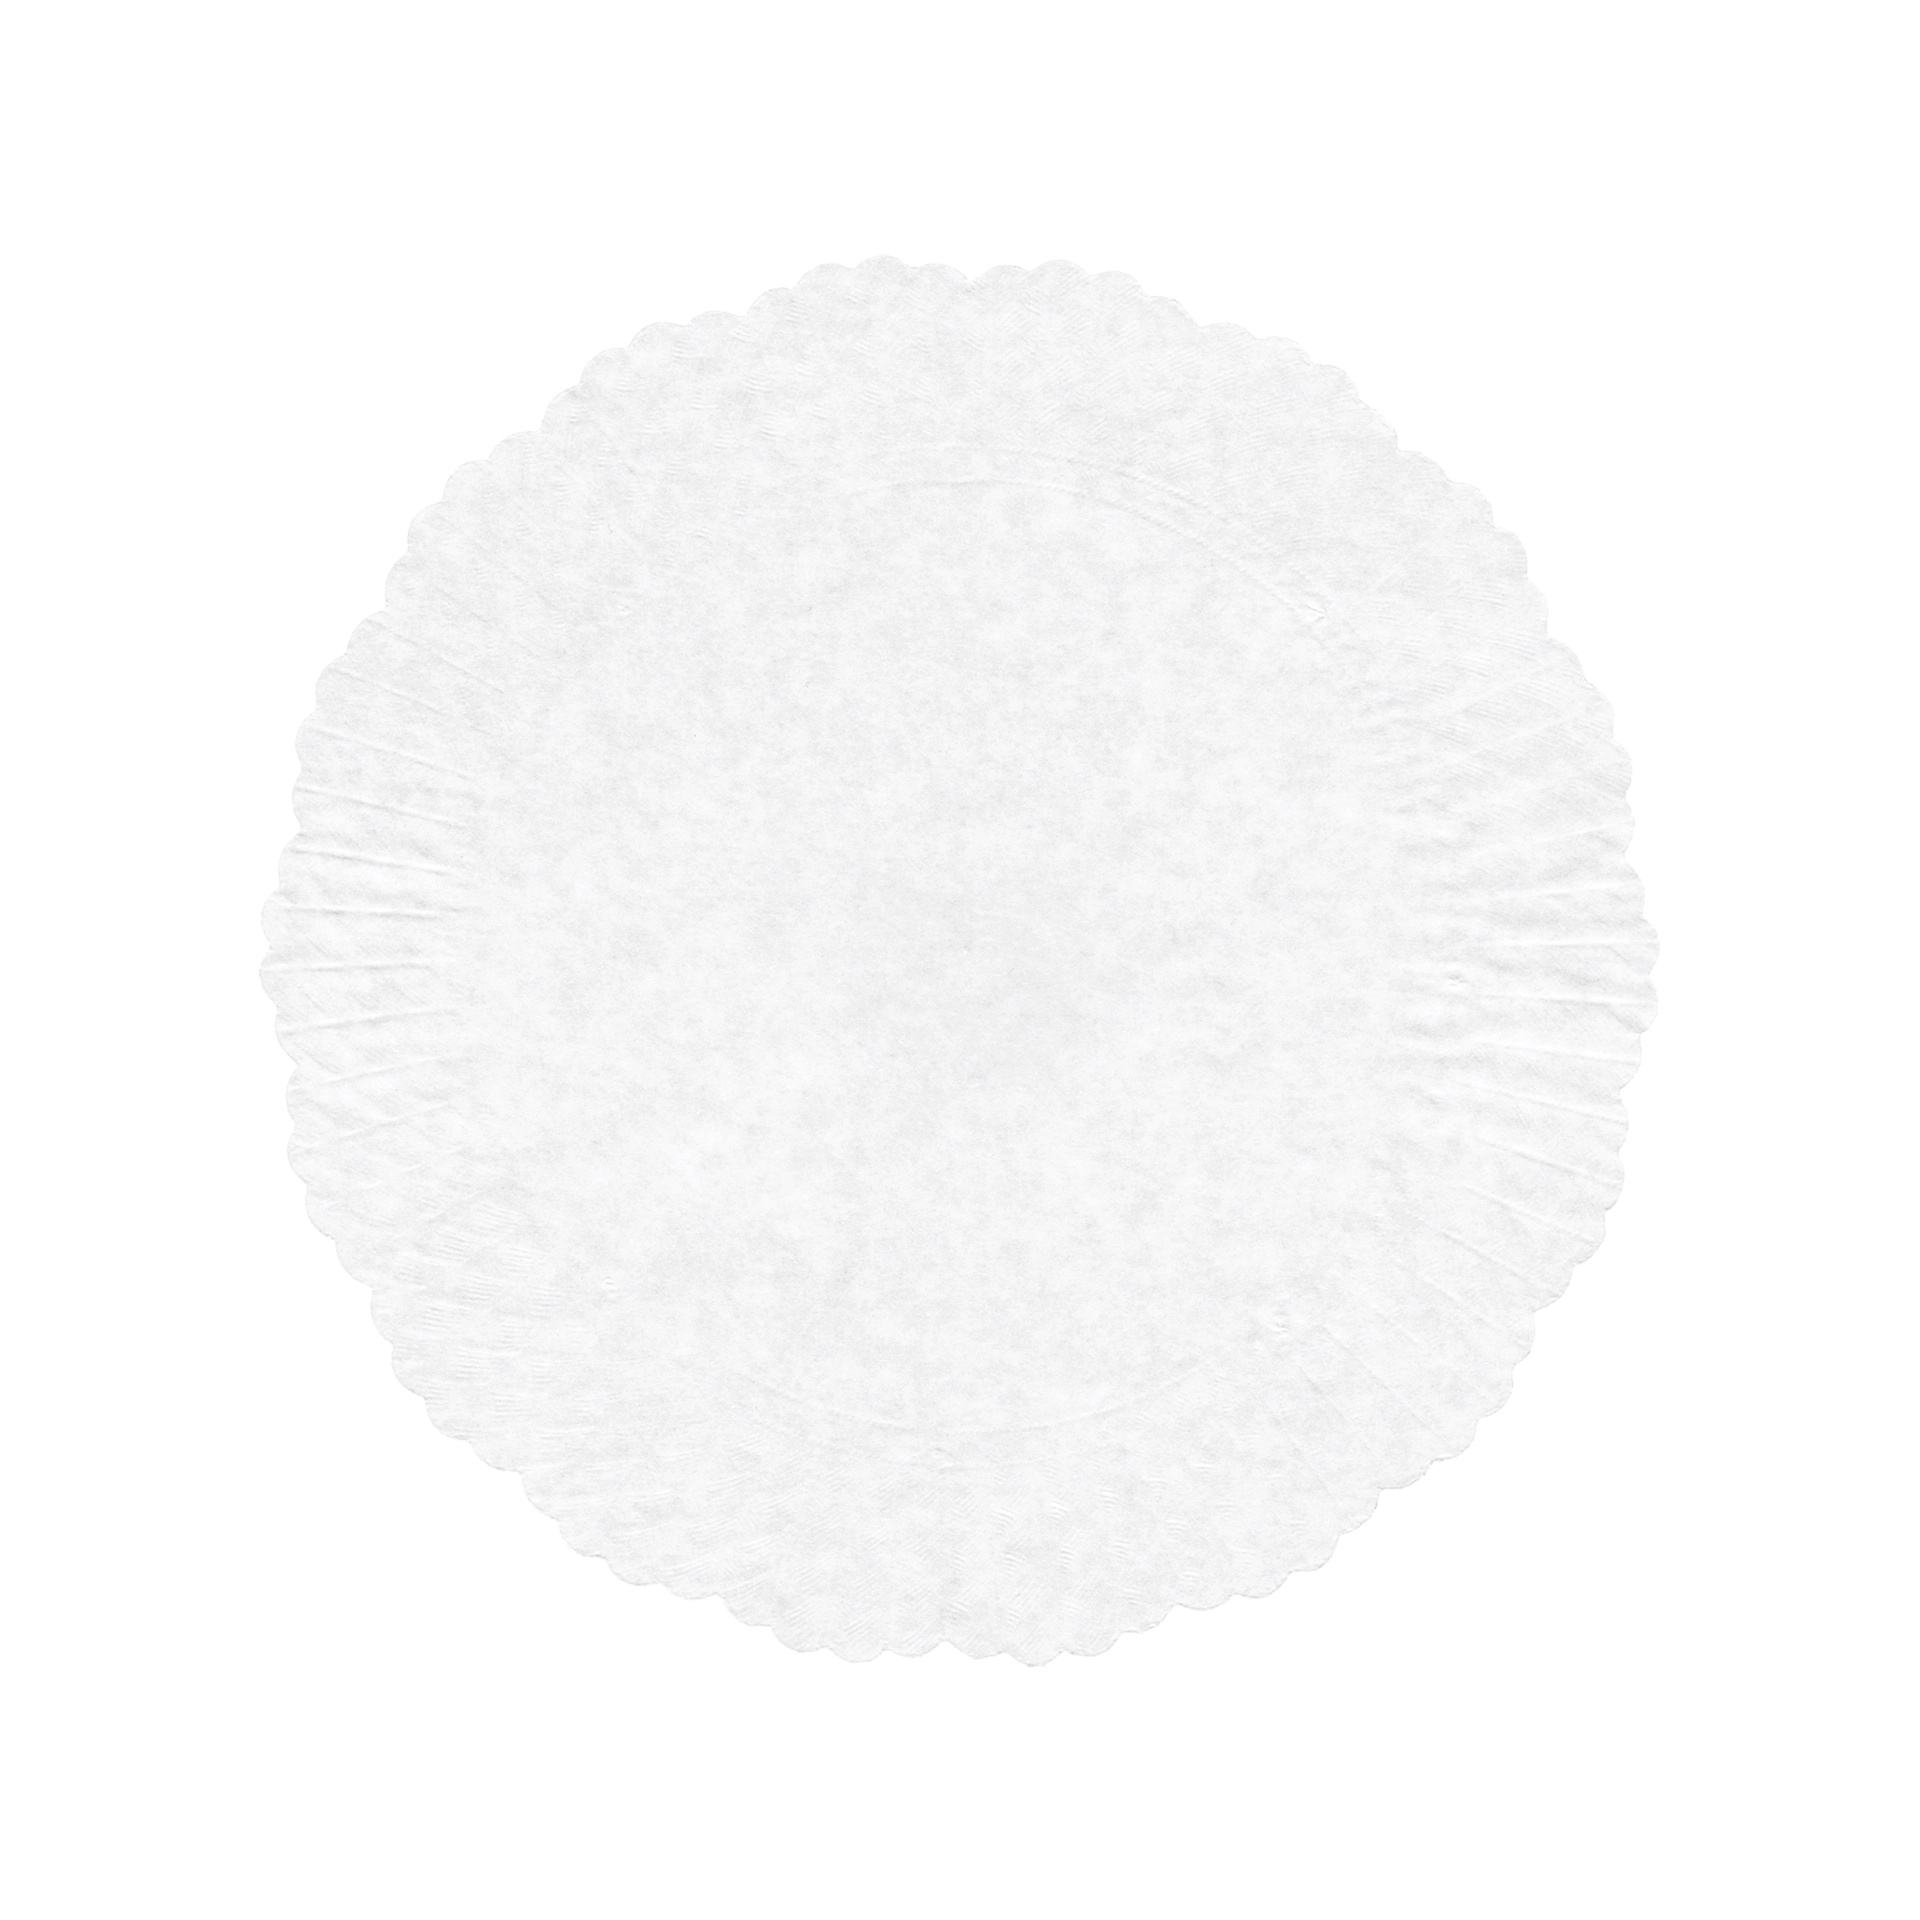 Plattenpapiere Ø 21 cm weiß | rund 